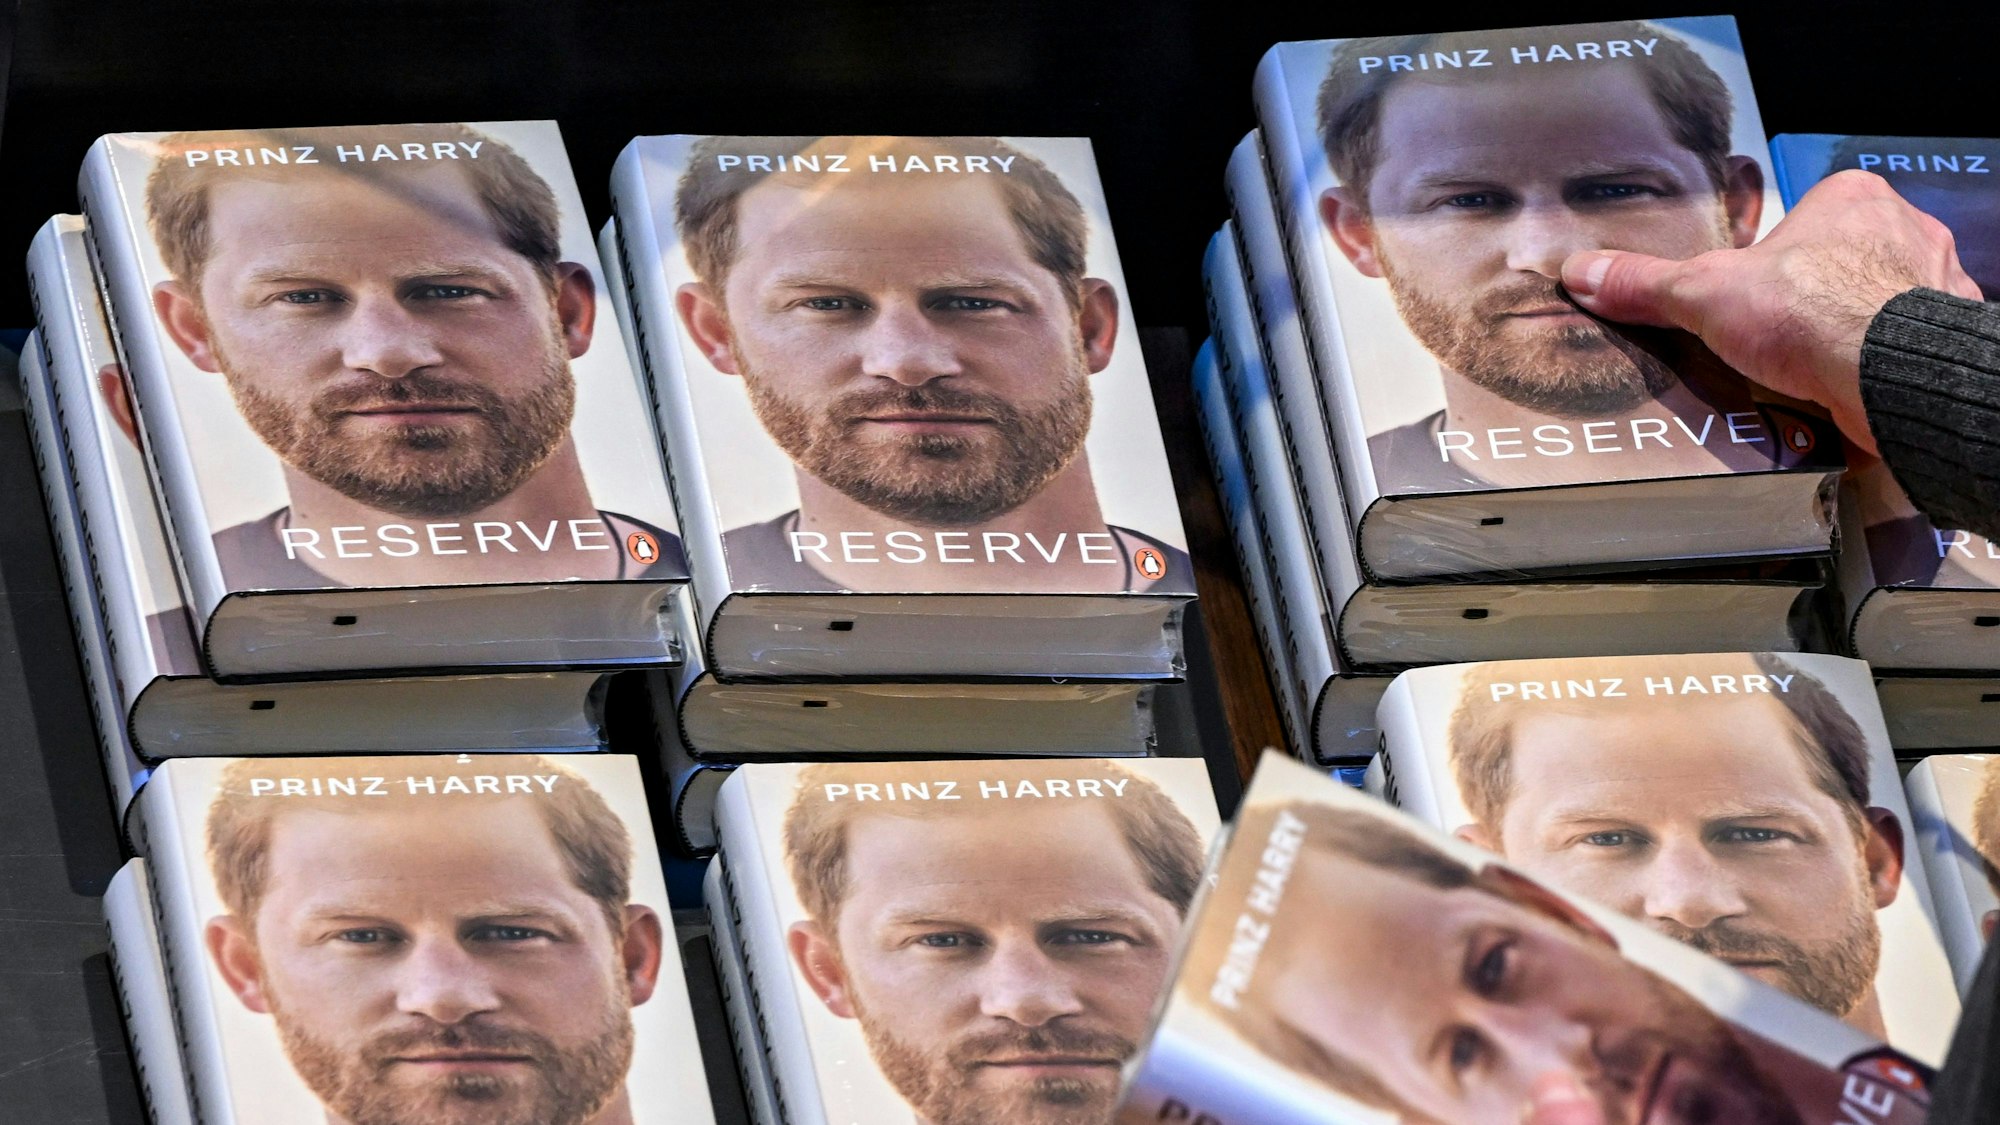 Einige Exemplare der Biografie von Prinz Harry liegen zum Verkauf bereit. Auf dem Umschlag ist ein Porträt von Prinz Harry zu sehen, darunter steht der deutsche Titel des Buches: "Reserve".